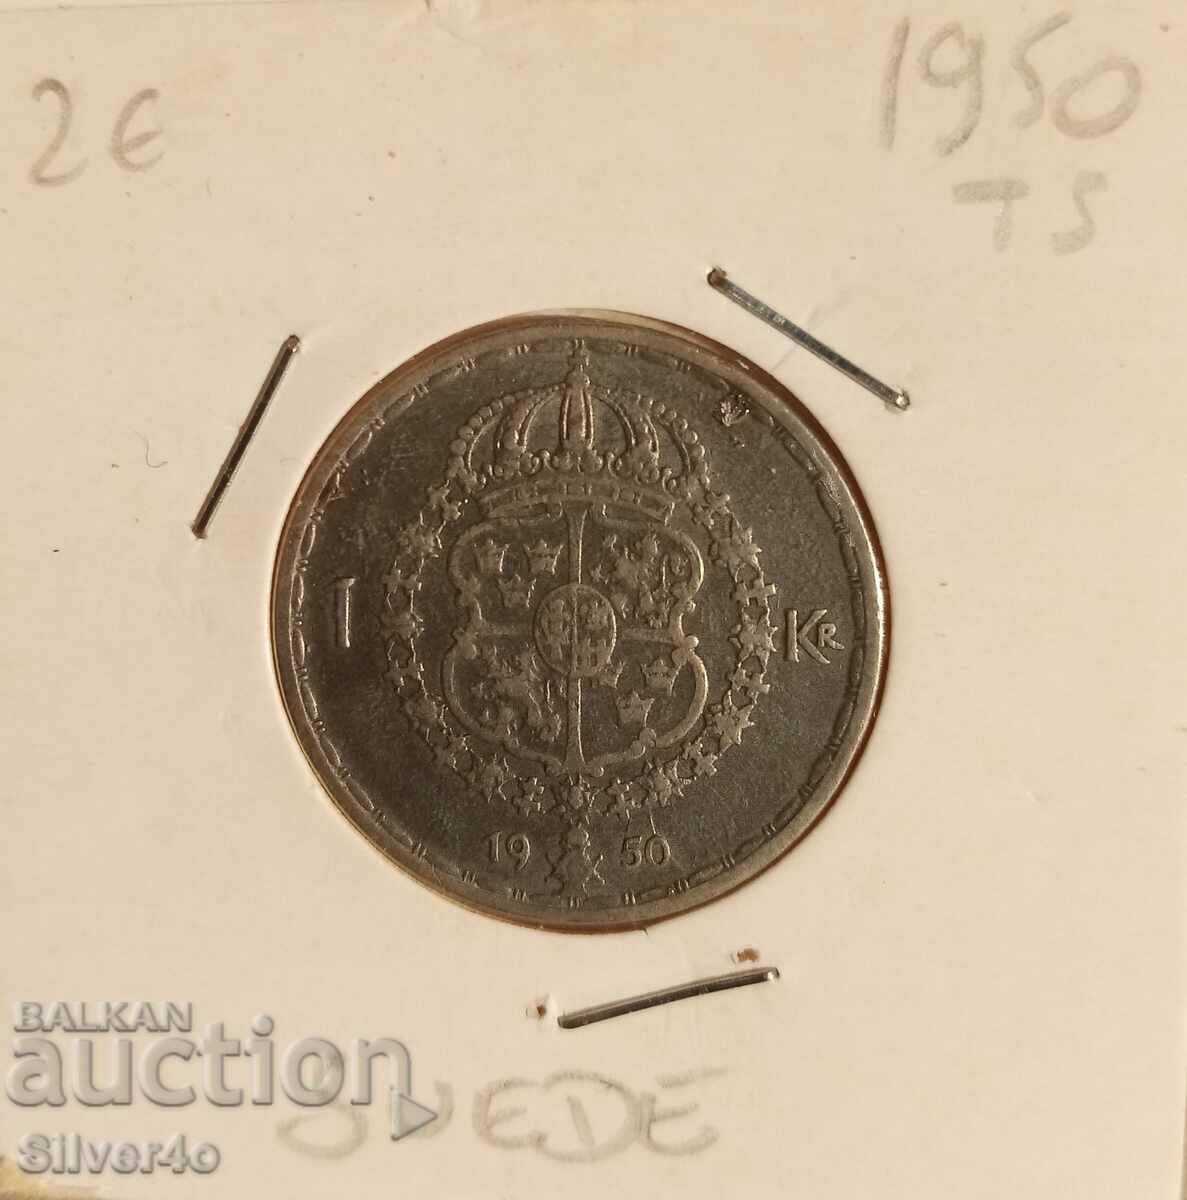 1 krone Sweden 1950